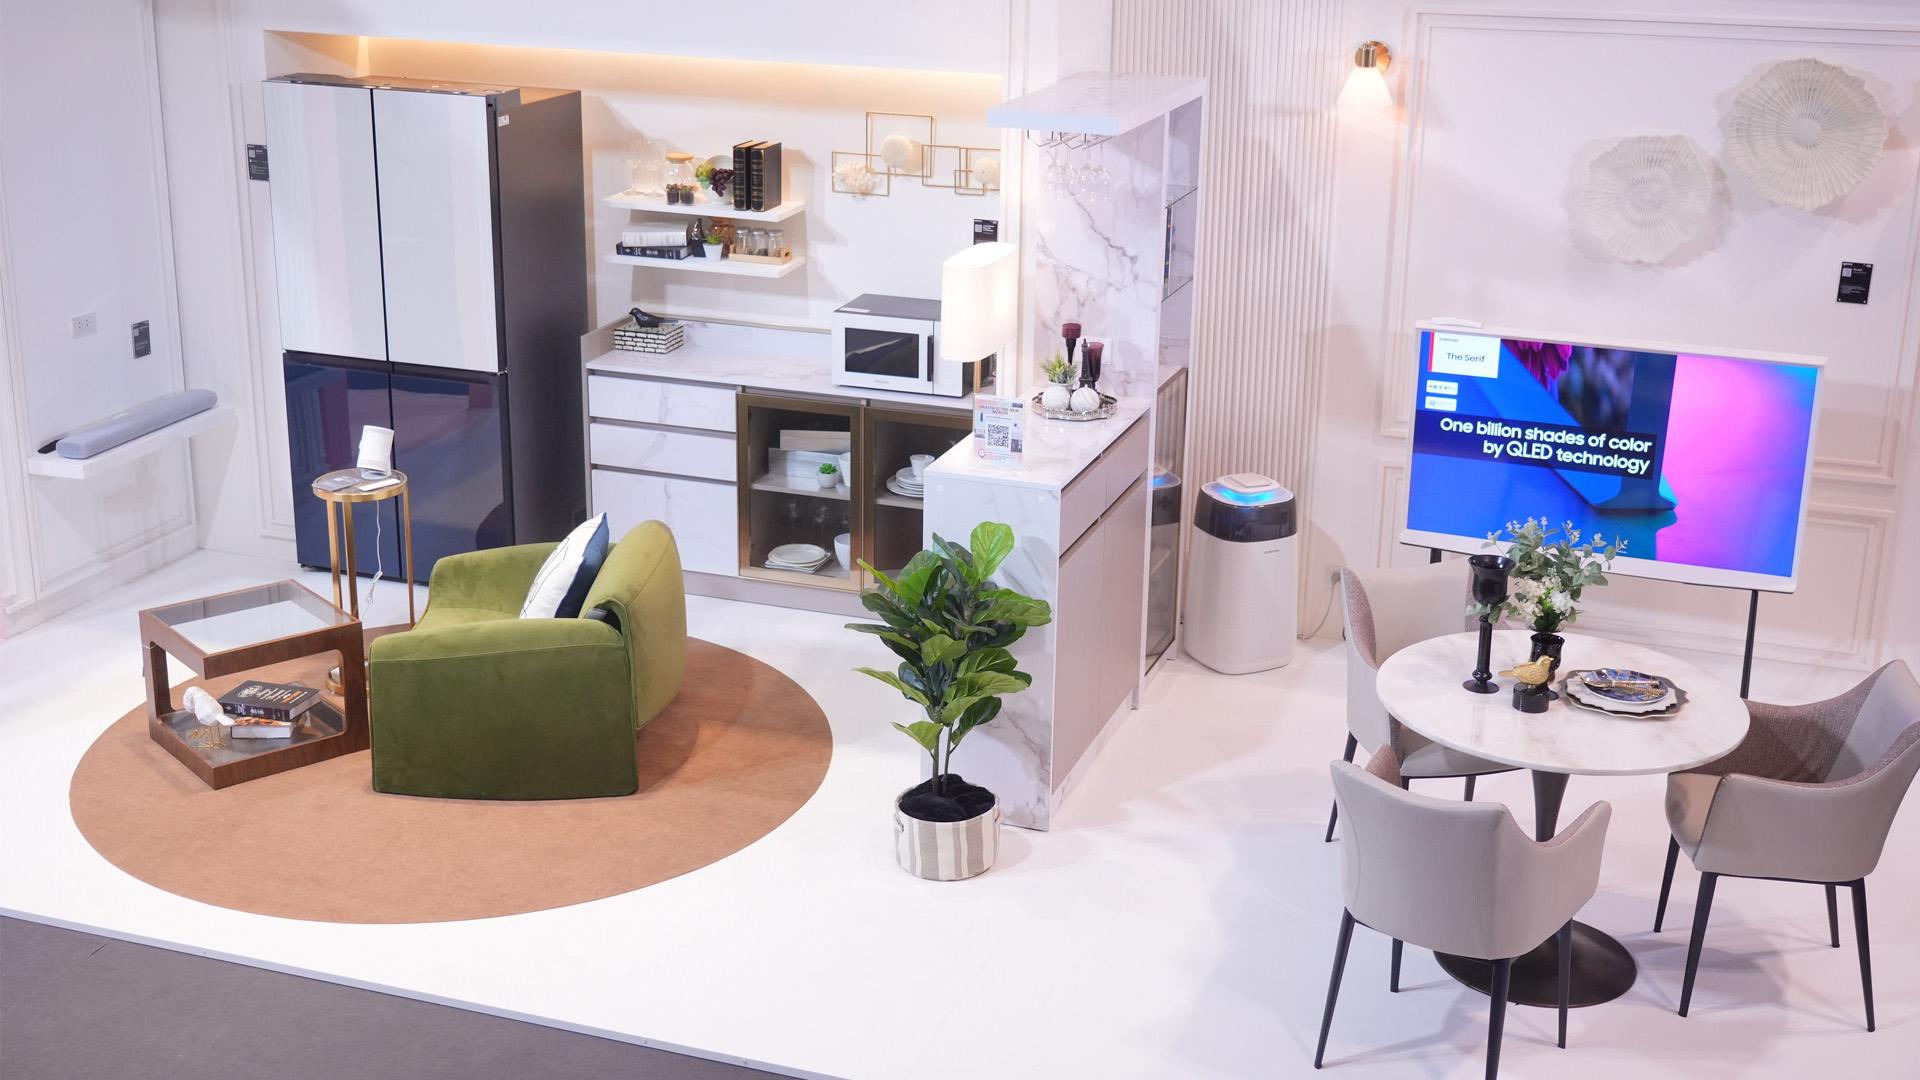 ซัมซุงจับมือ SB Design Square เปิดตัว “Lifestyle Enabler” ครั้งแรกของโซลูชันเพื่อการแต่งบ้านทุกสไตล์